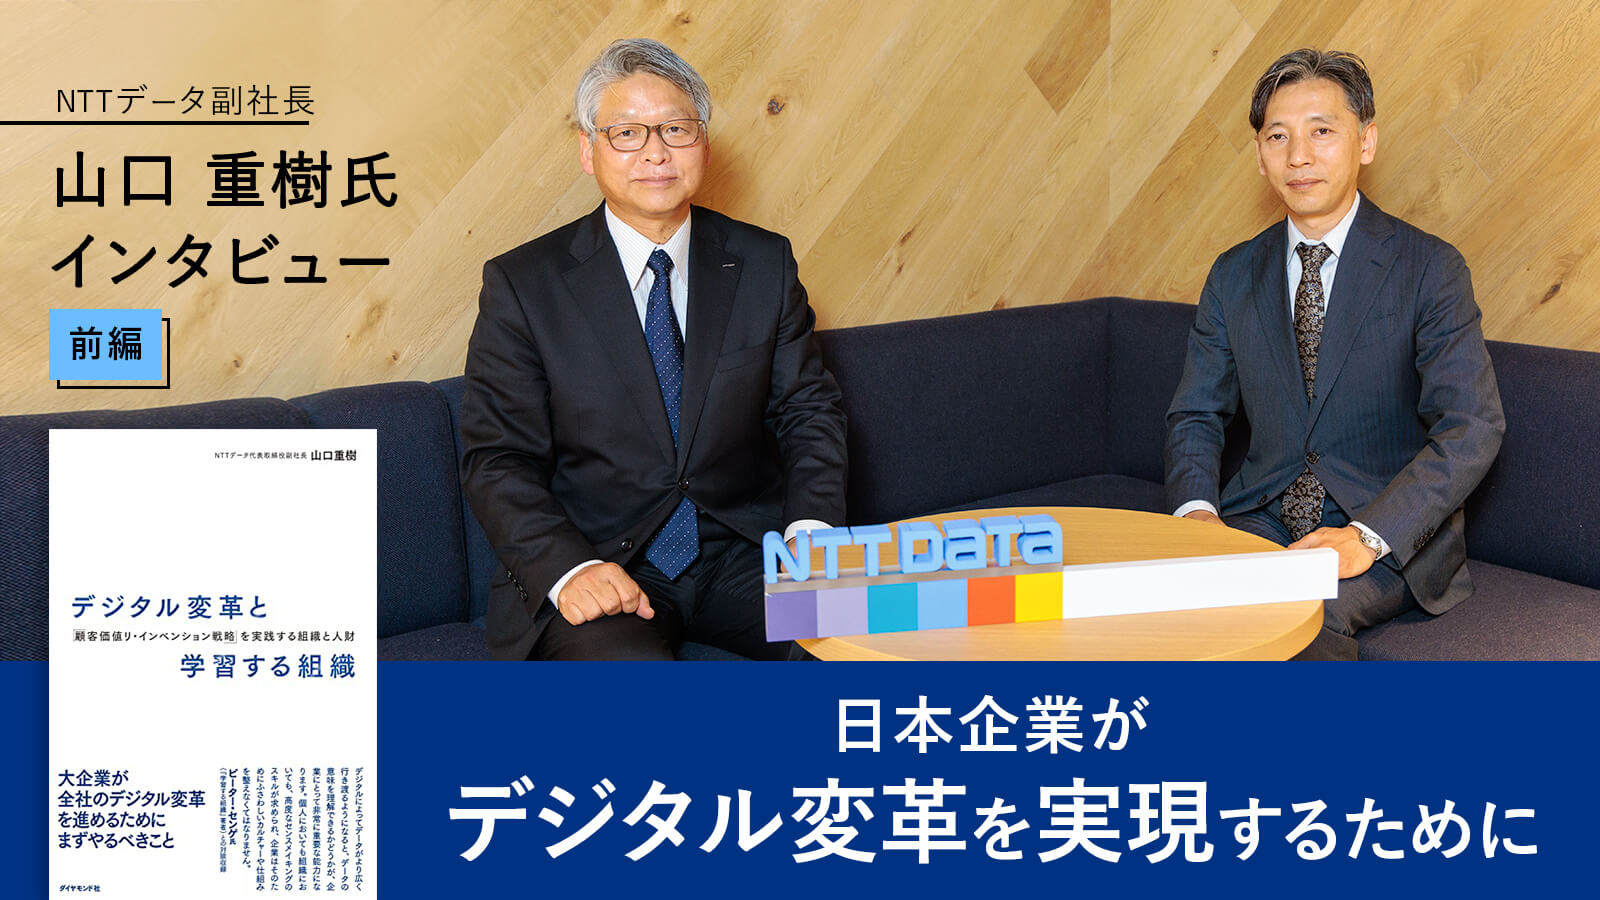 日本企業がデジタル変革を実現するために――NTTデータ副社長 山口 重樹氏インタビュー【前編】